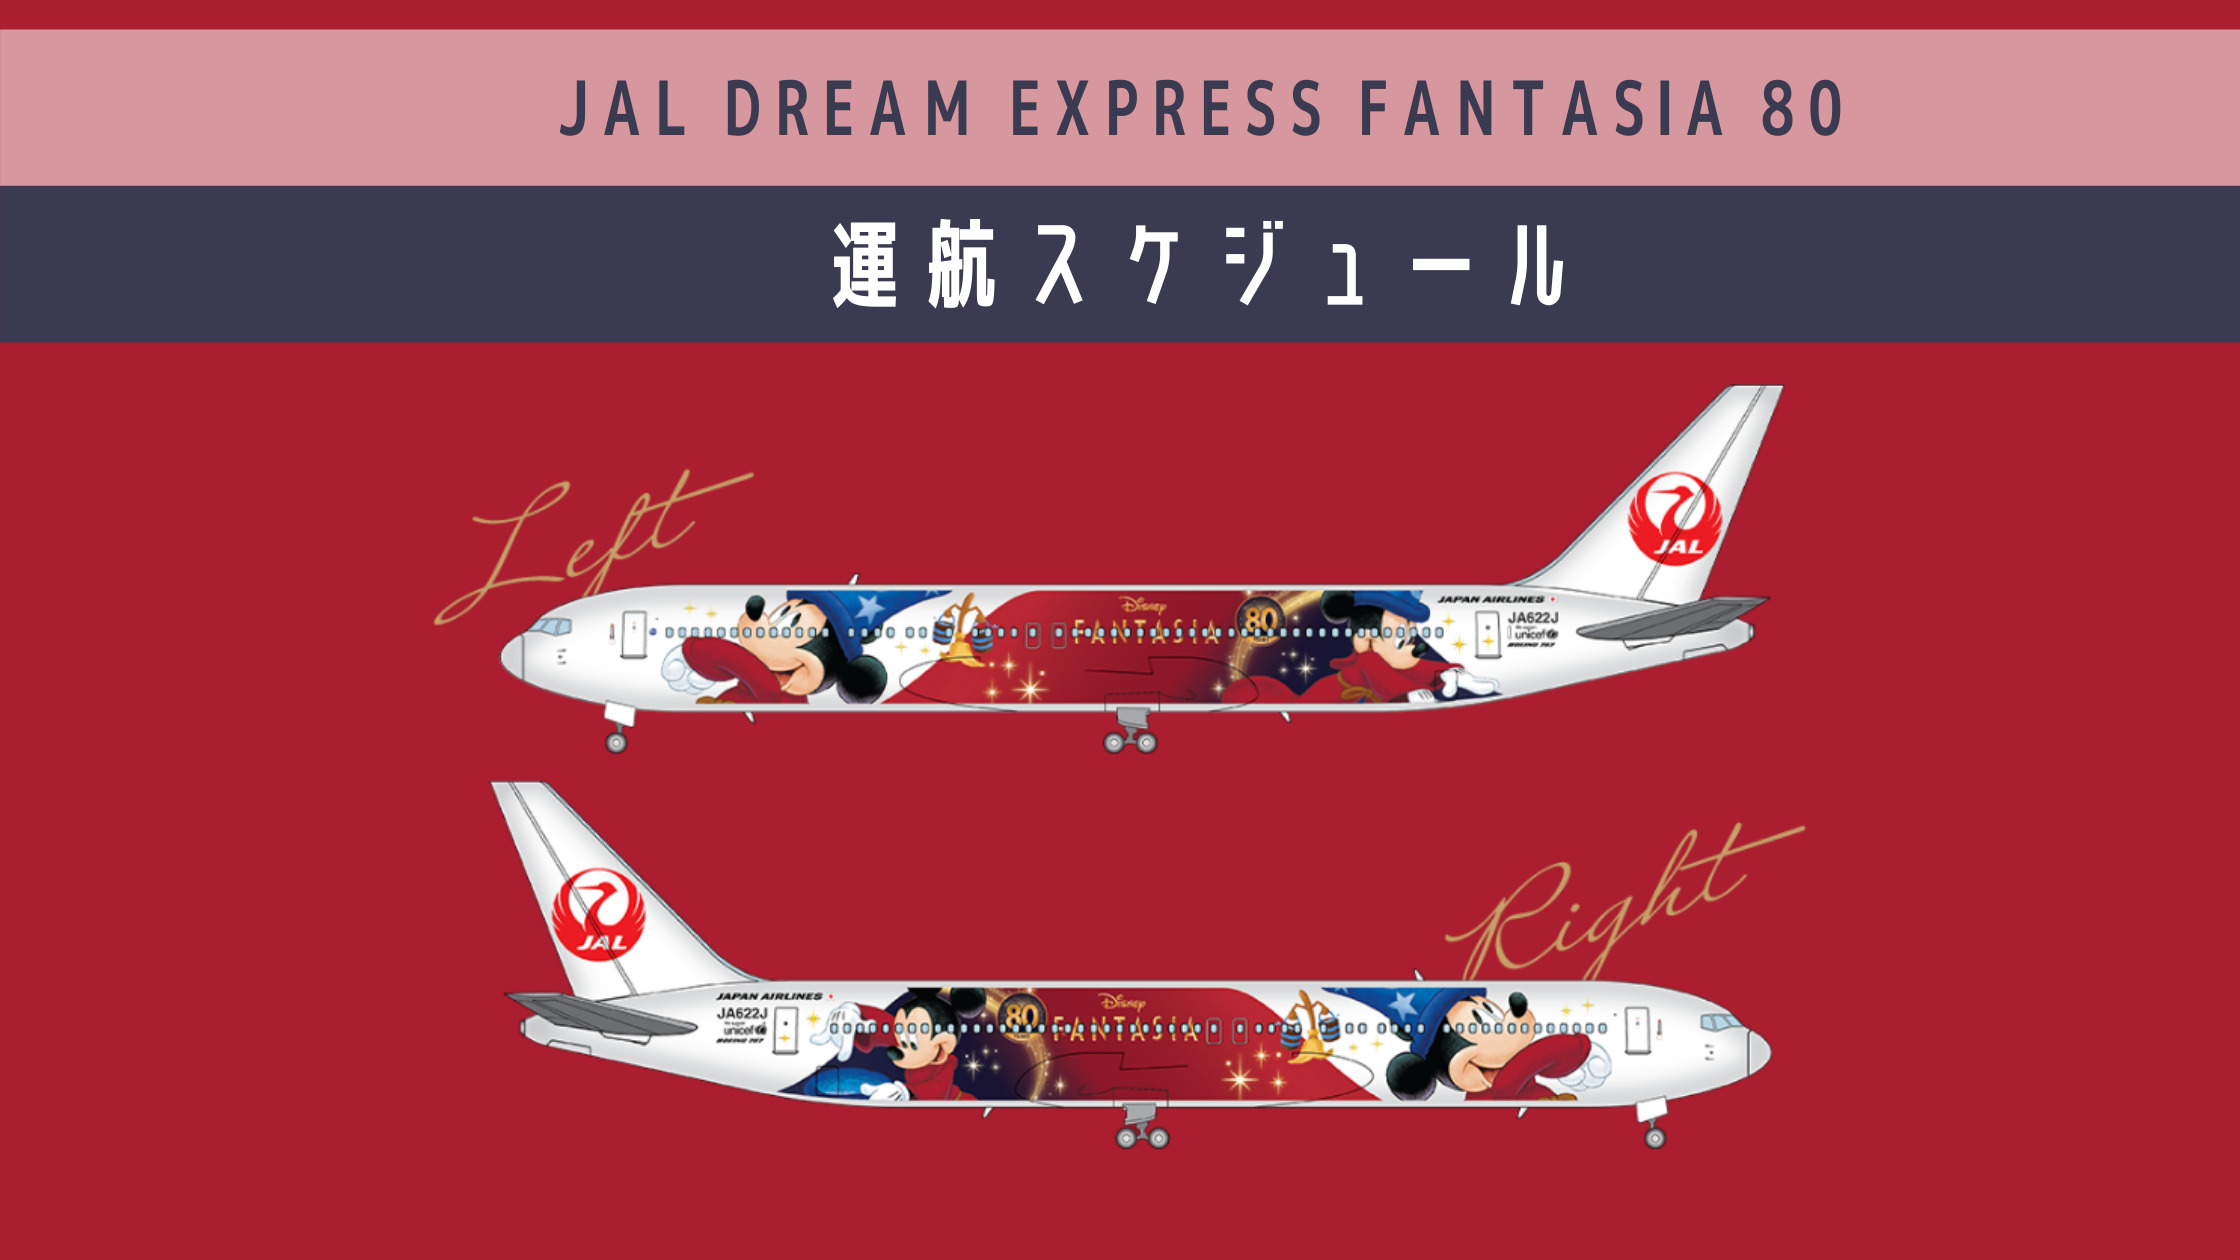 フライトスケジュール毎日更新 ディズニー ファンタジア 公開80周年記念 Jal Dream Express Fantasia 80 運航開始